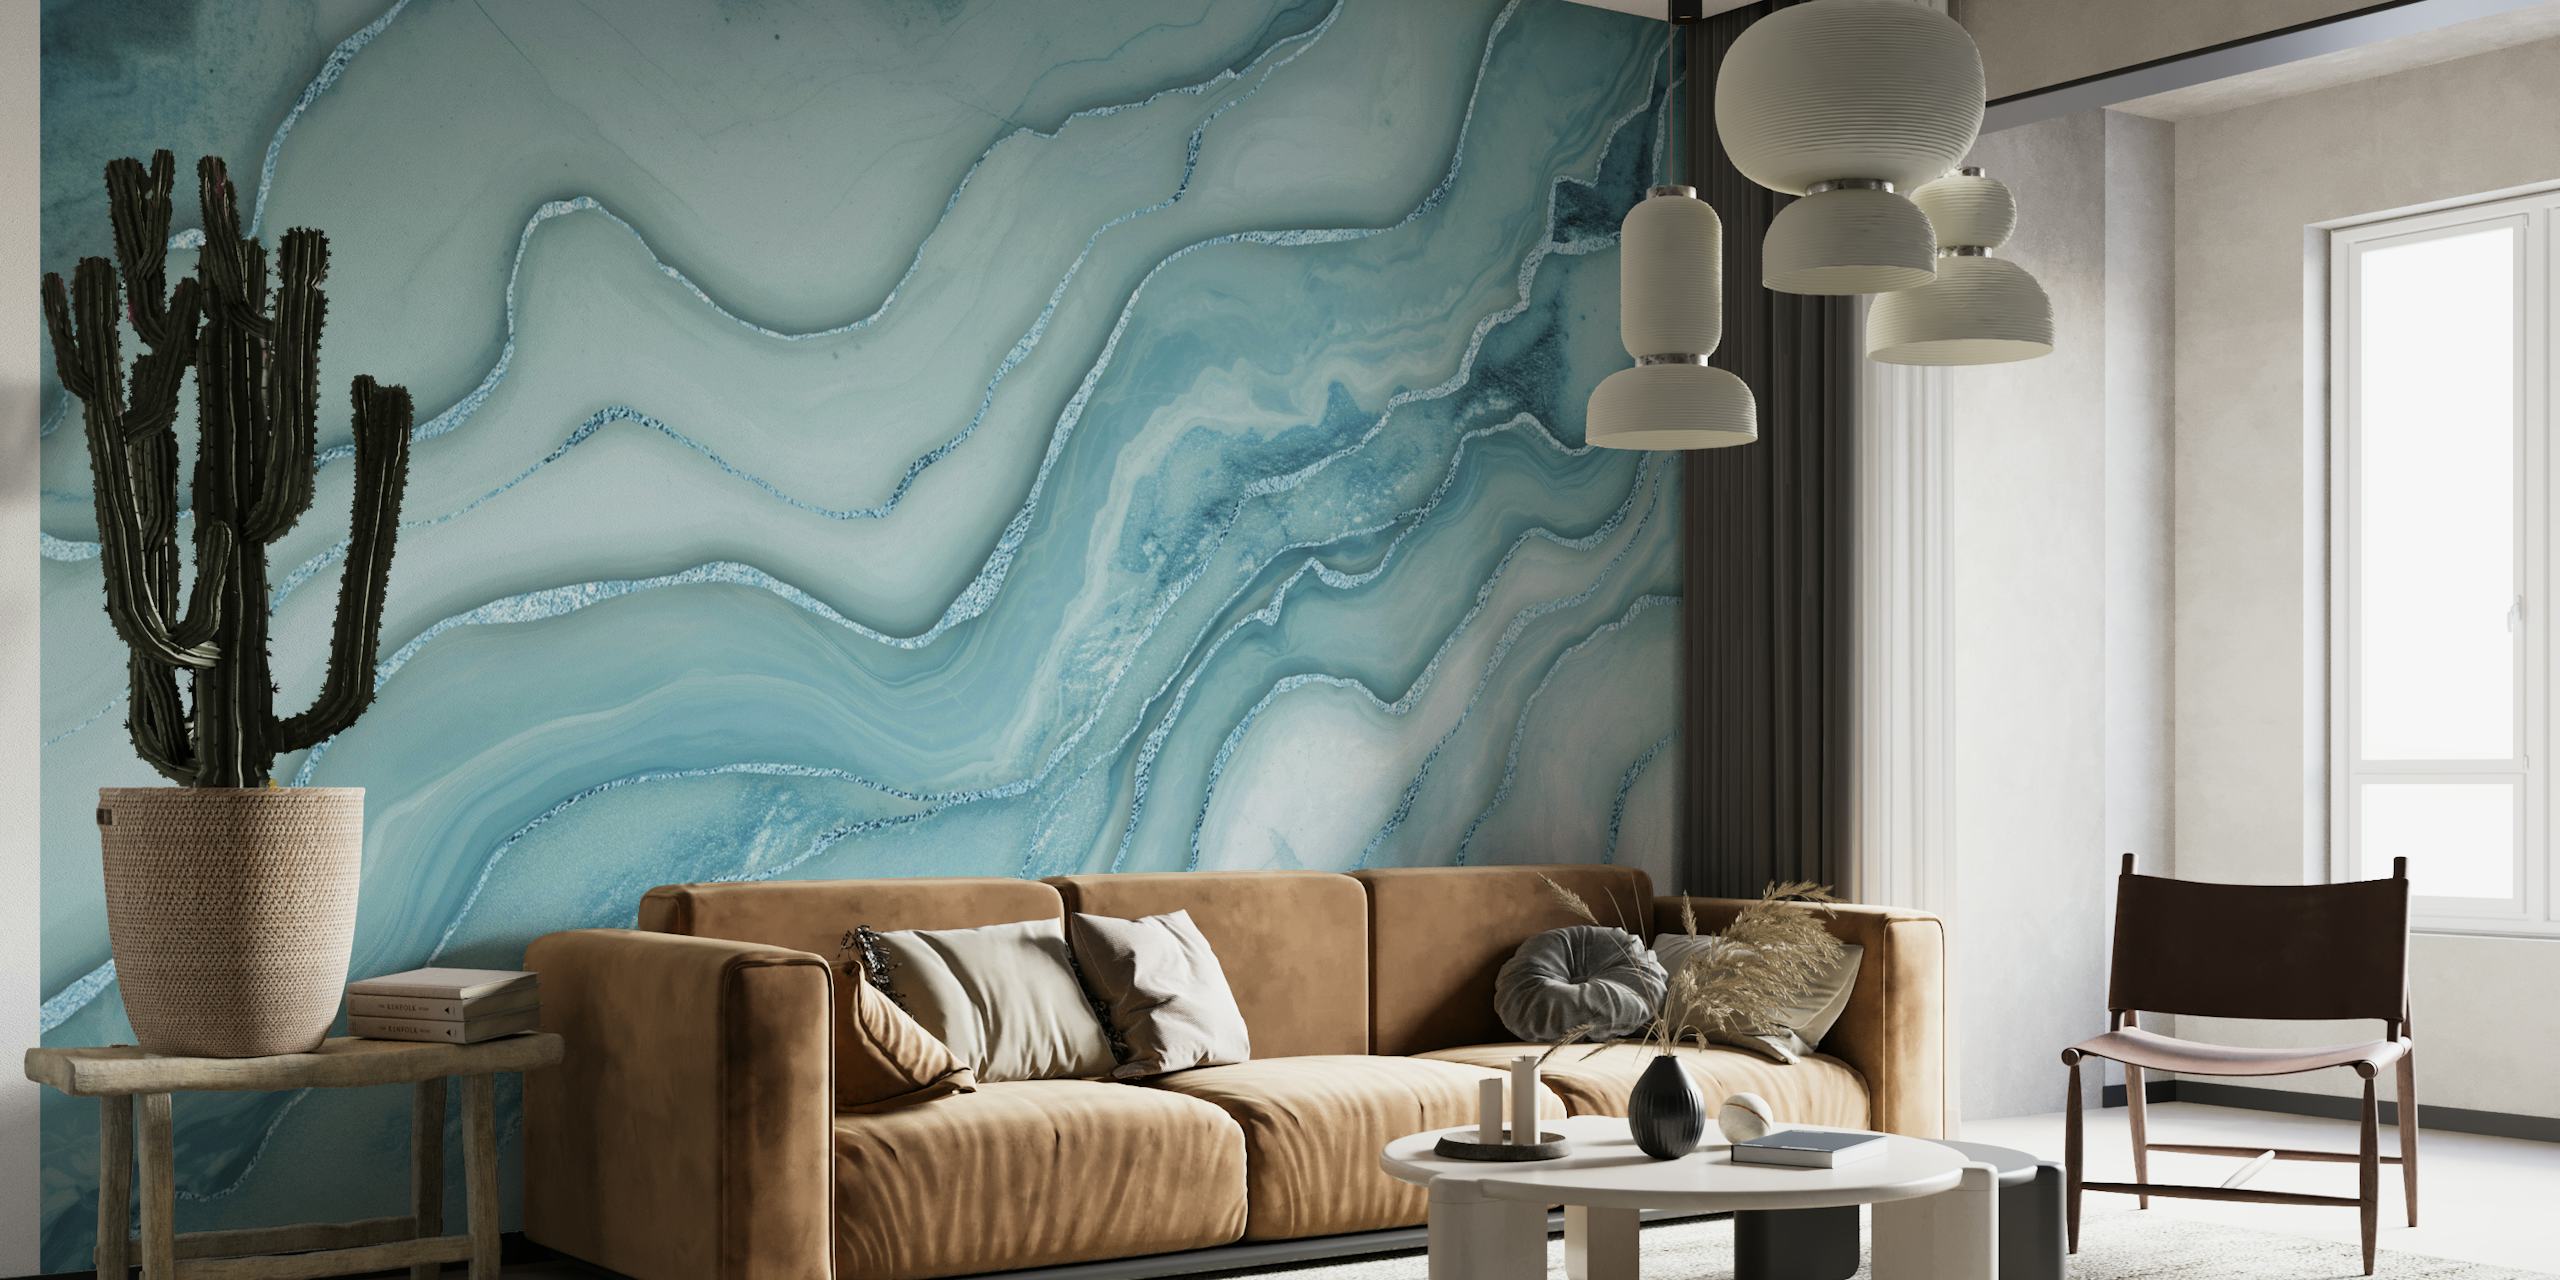 Wandbild mit aquablauem Marmormuster und wirbelnden grauen Akzenten, das eine luxuriöse und heitere Atmosphäre schafft.